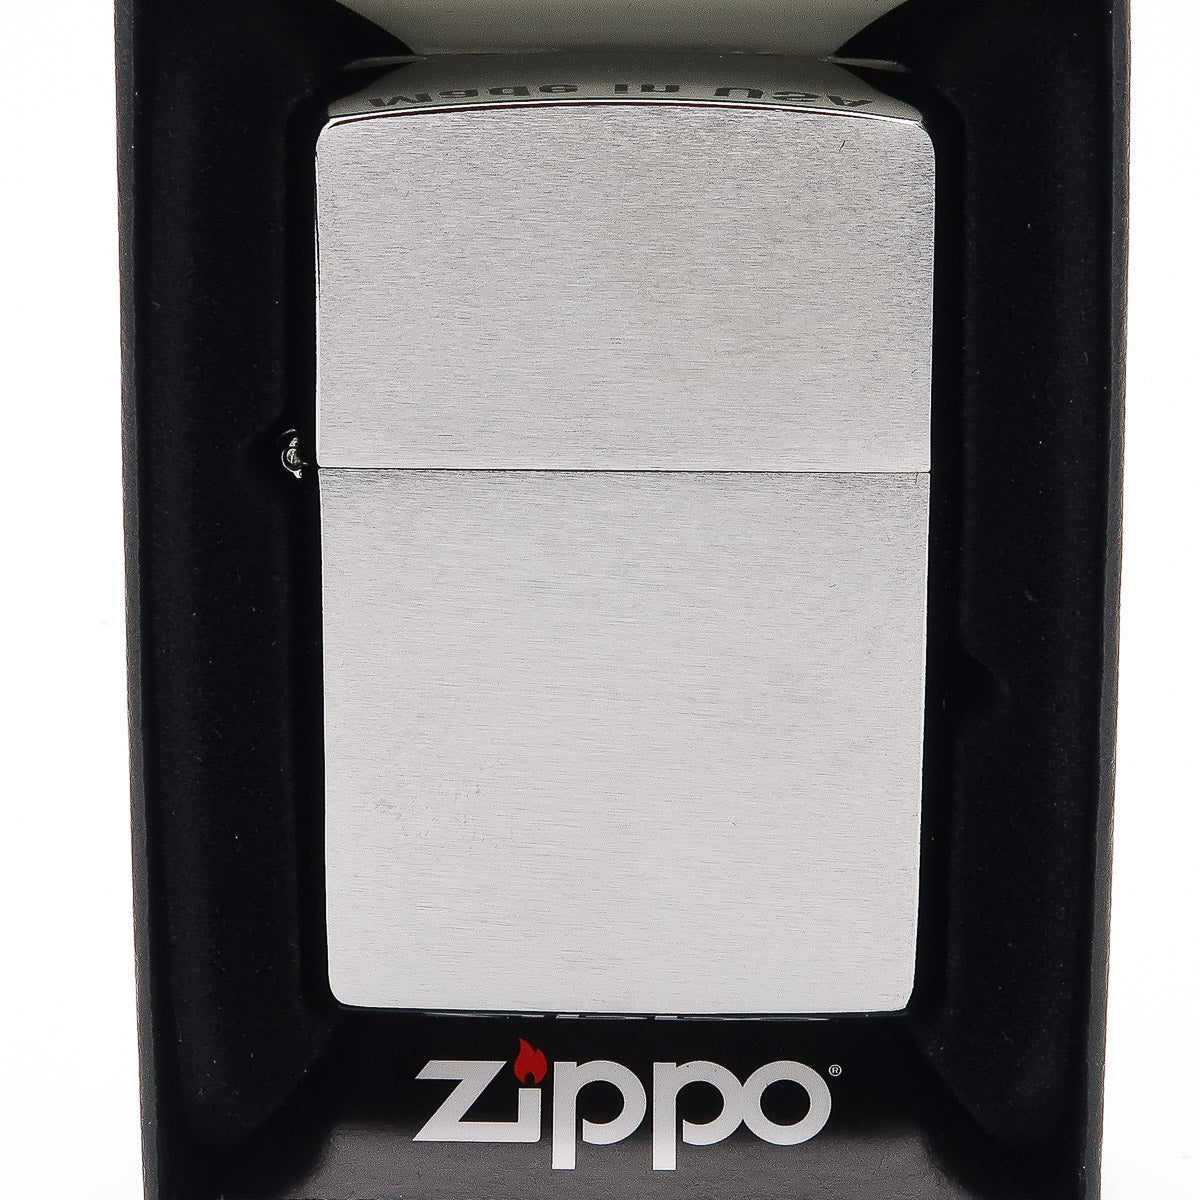 Zippo Original Storm Aansteker met Gravure